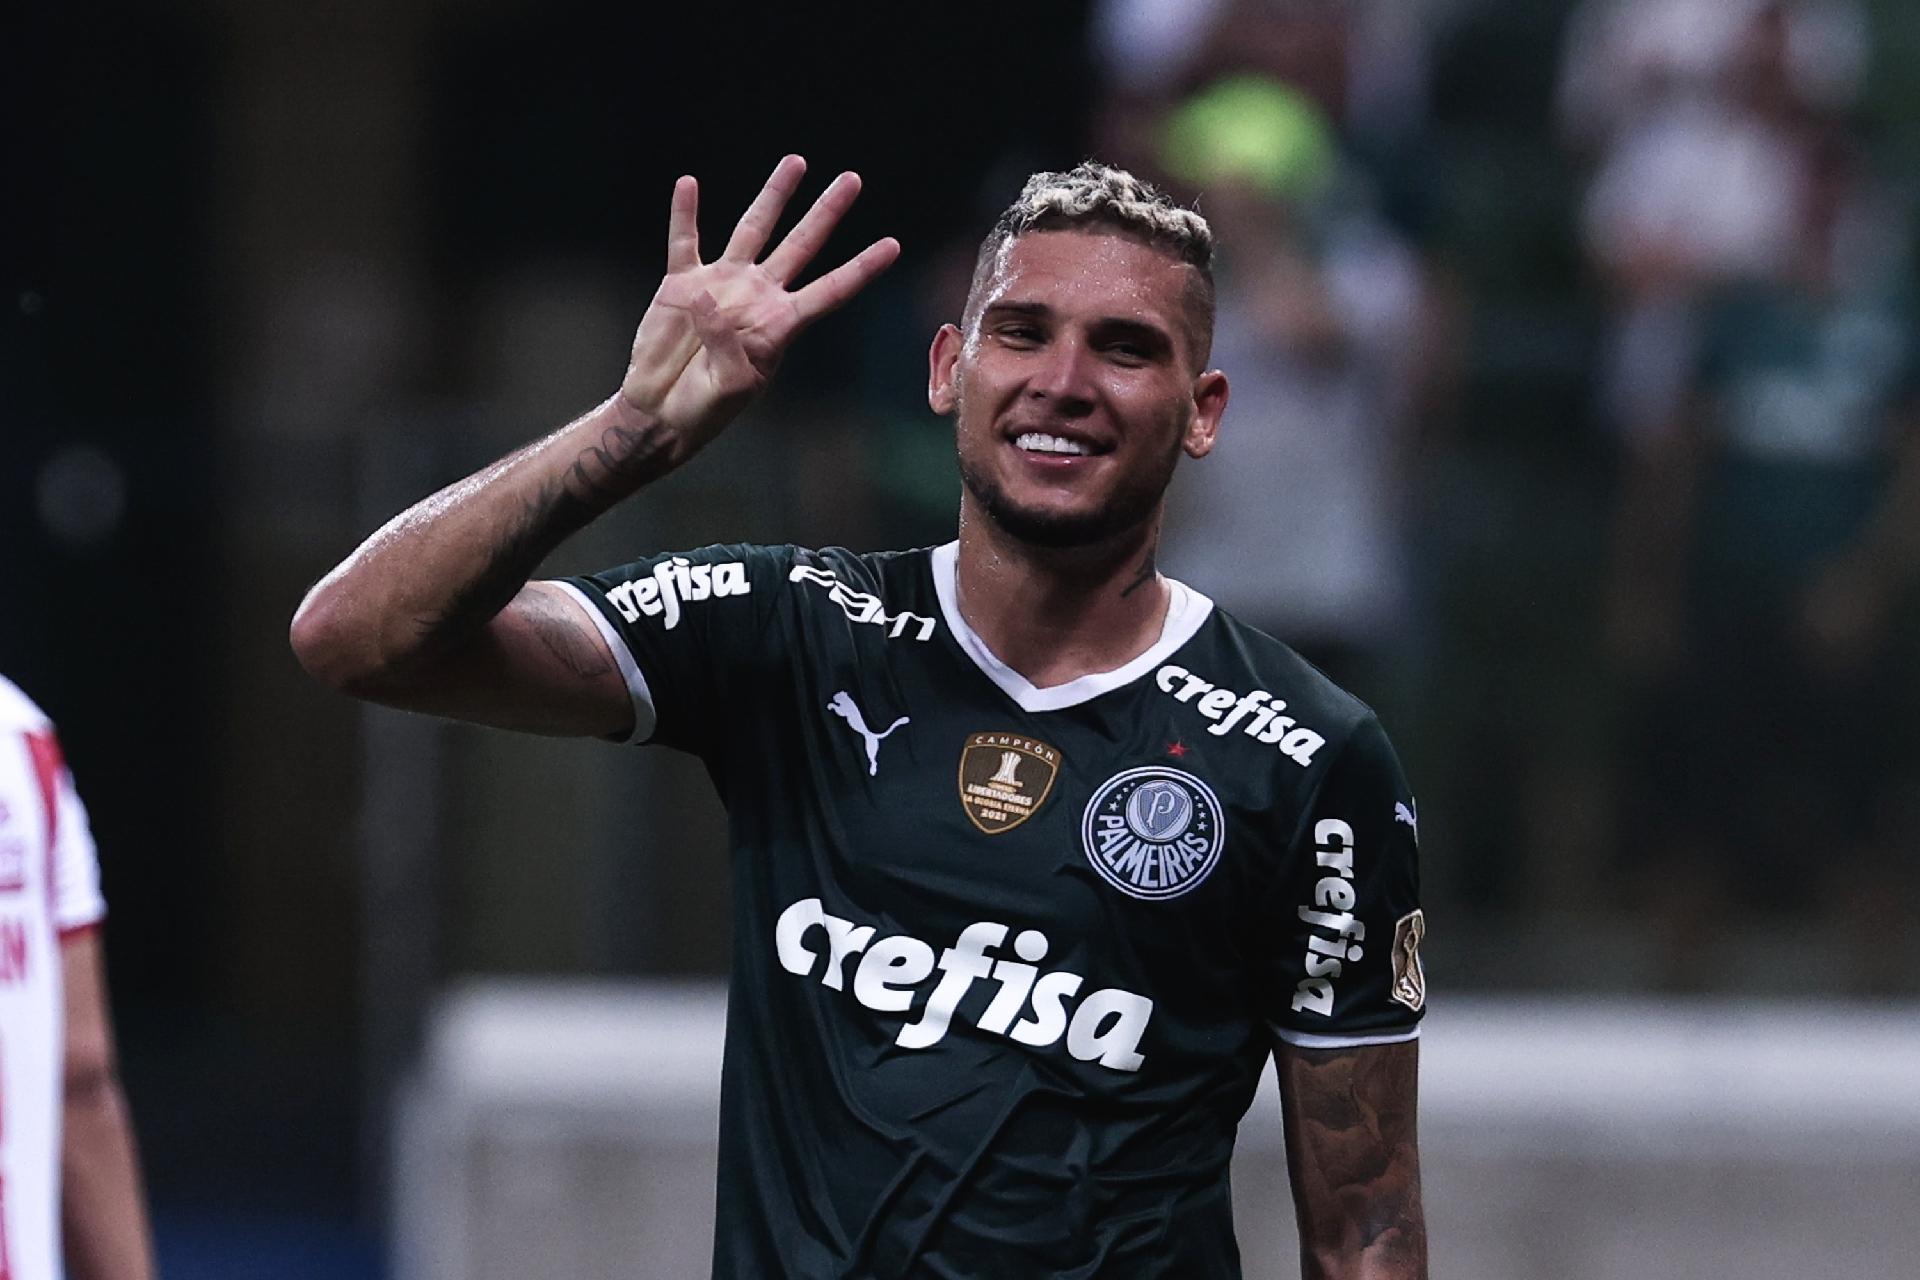 Com reservas, Palmeiras vence Ituano e vira líder do Grupo D do